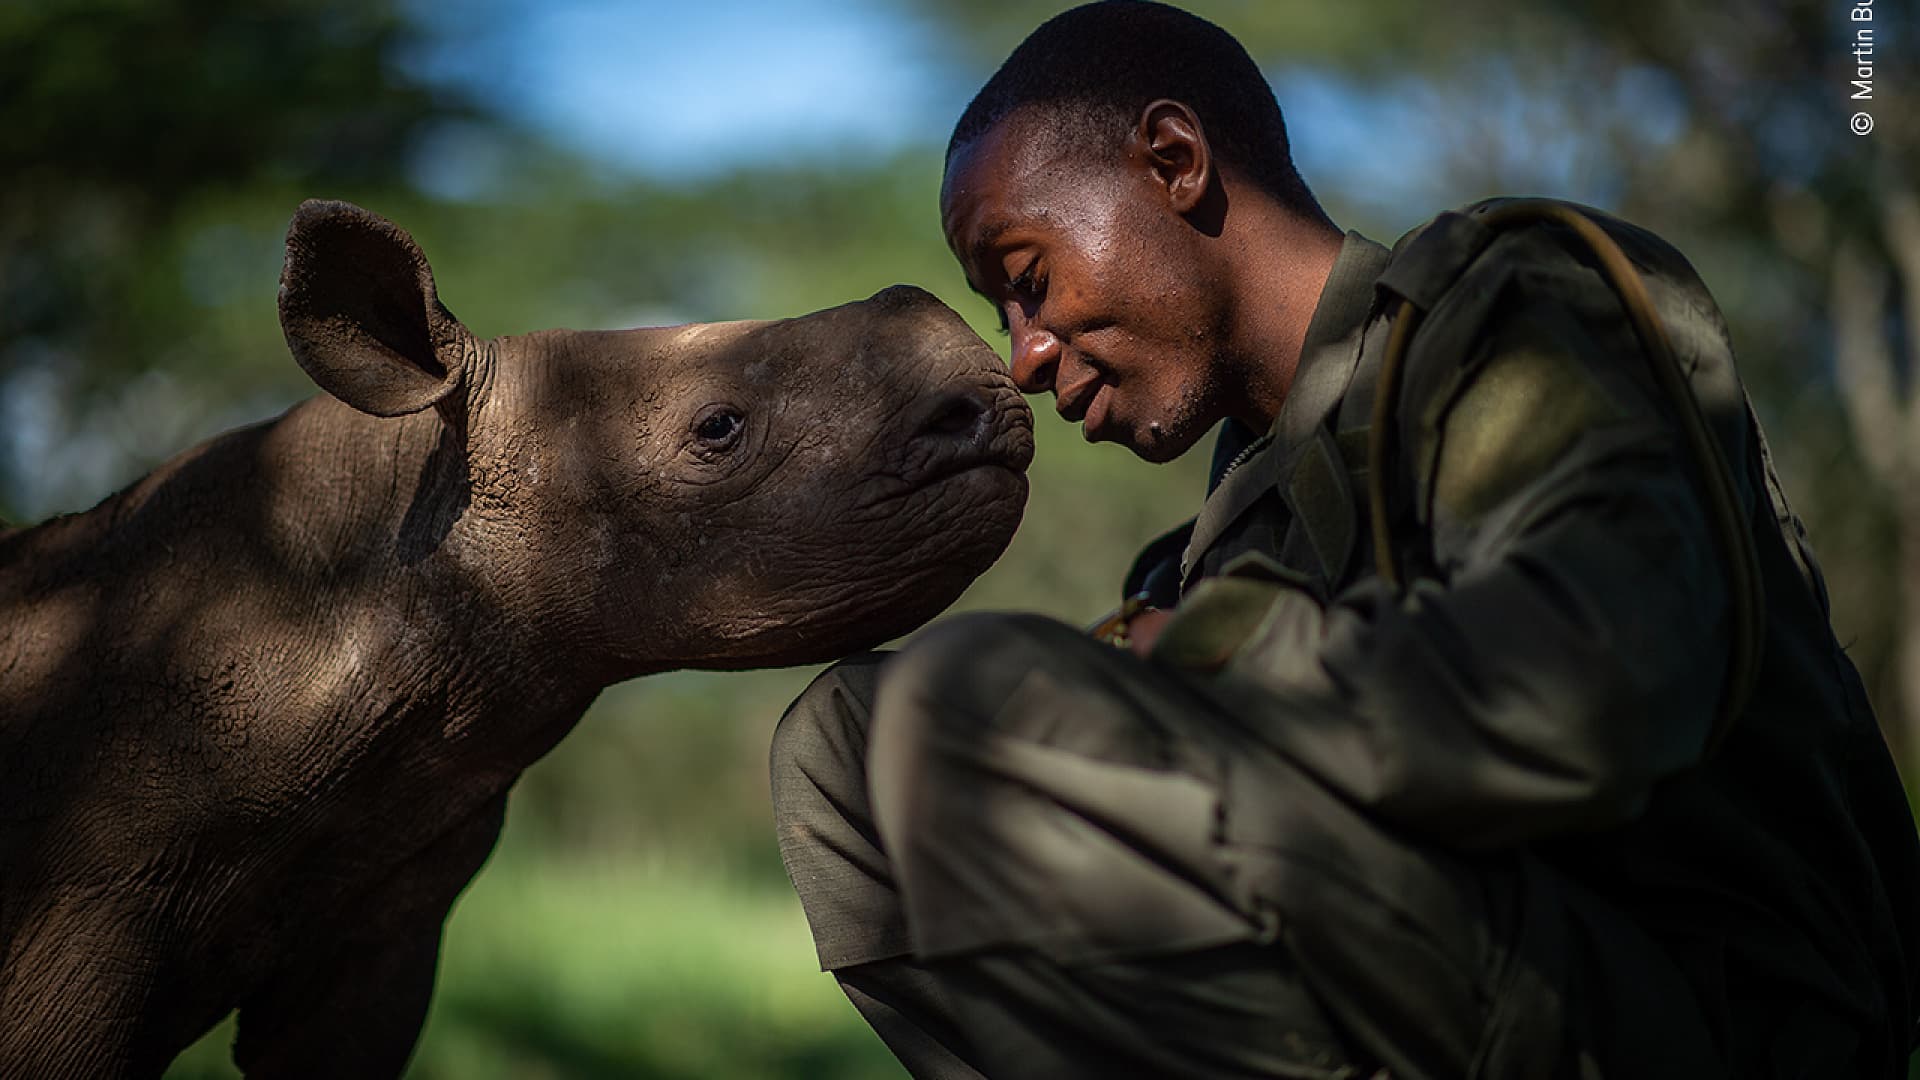  لقطة خاصة لصغير وحيد القرن مع حارسه في كينيا